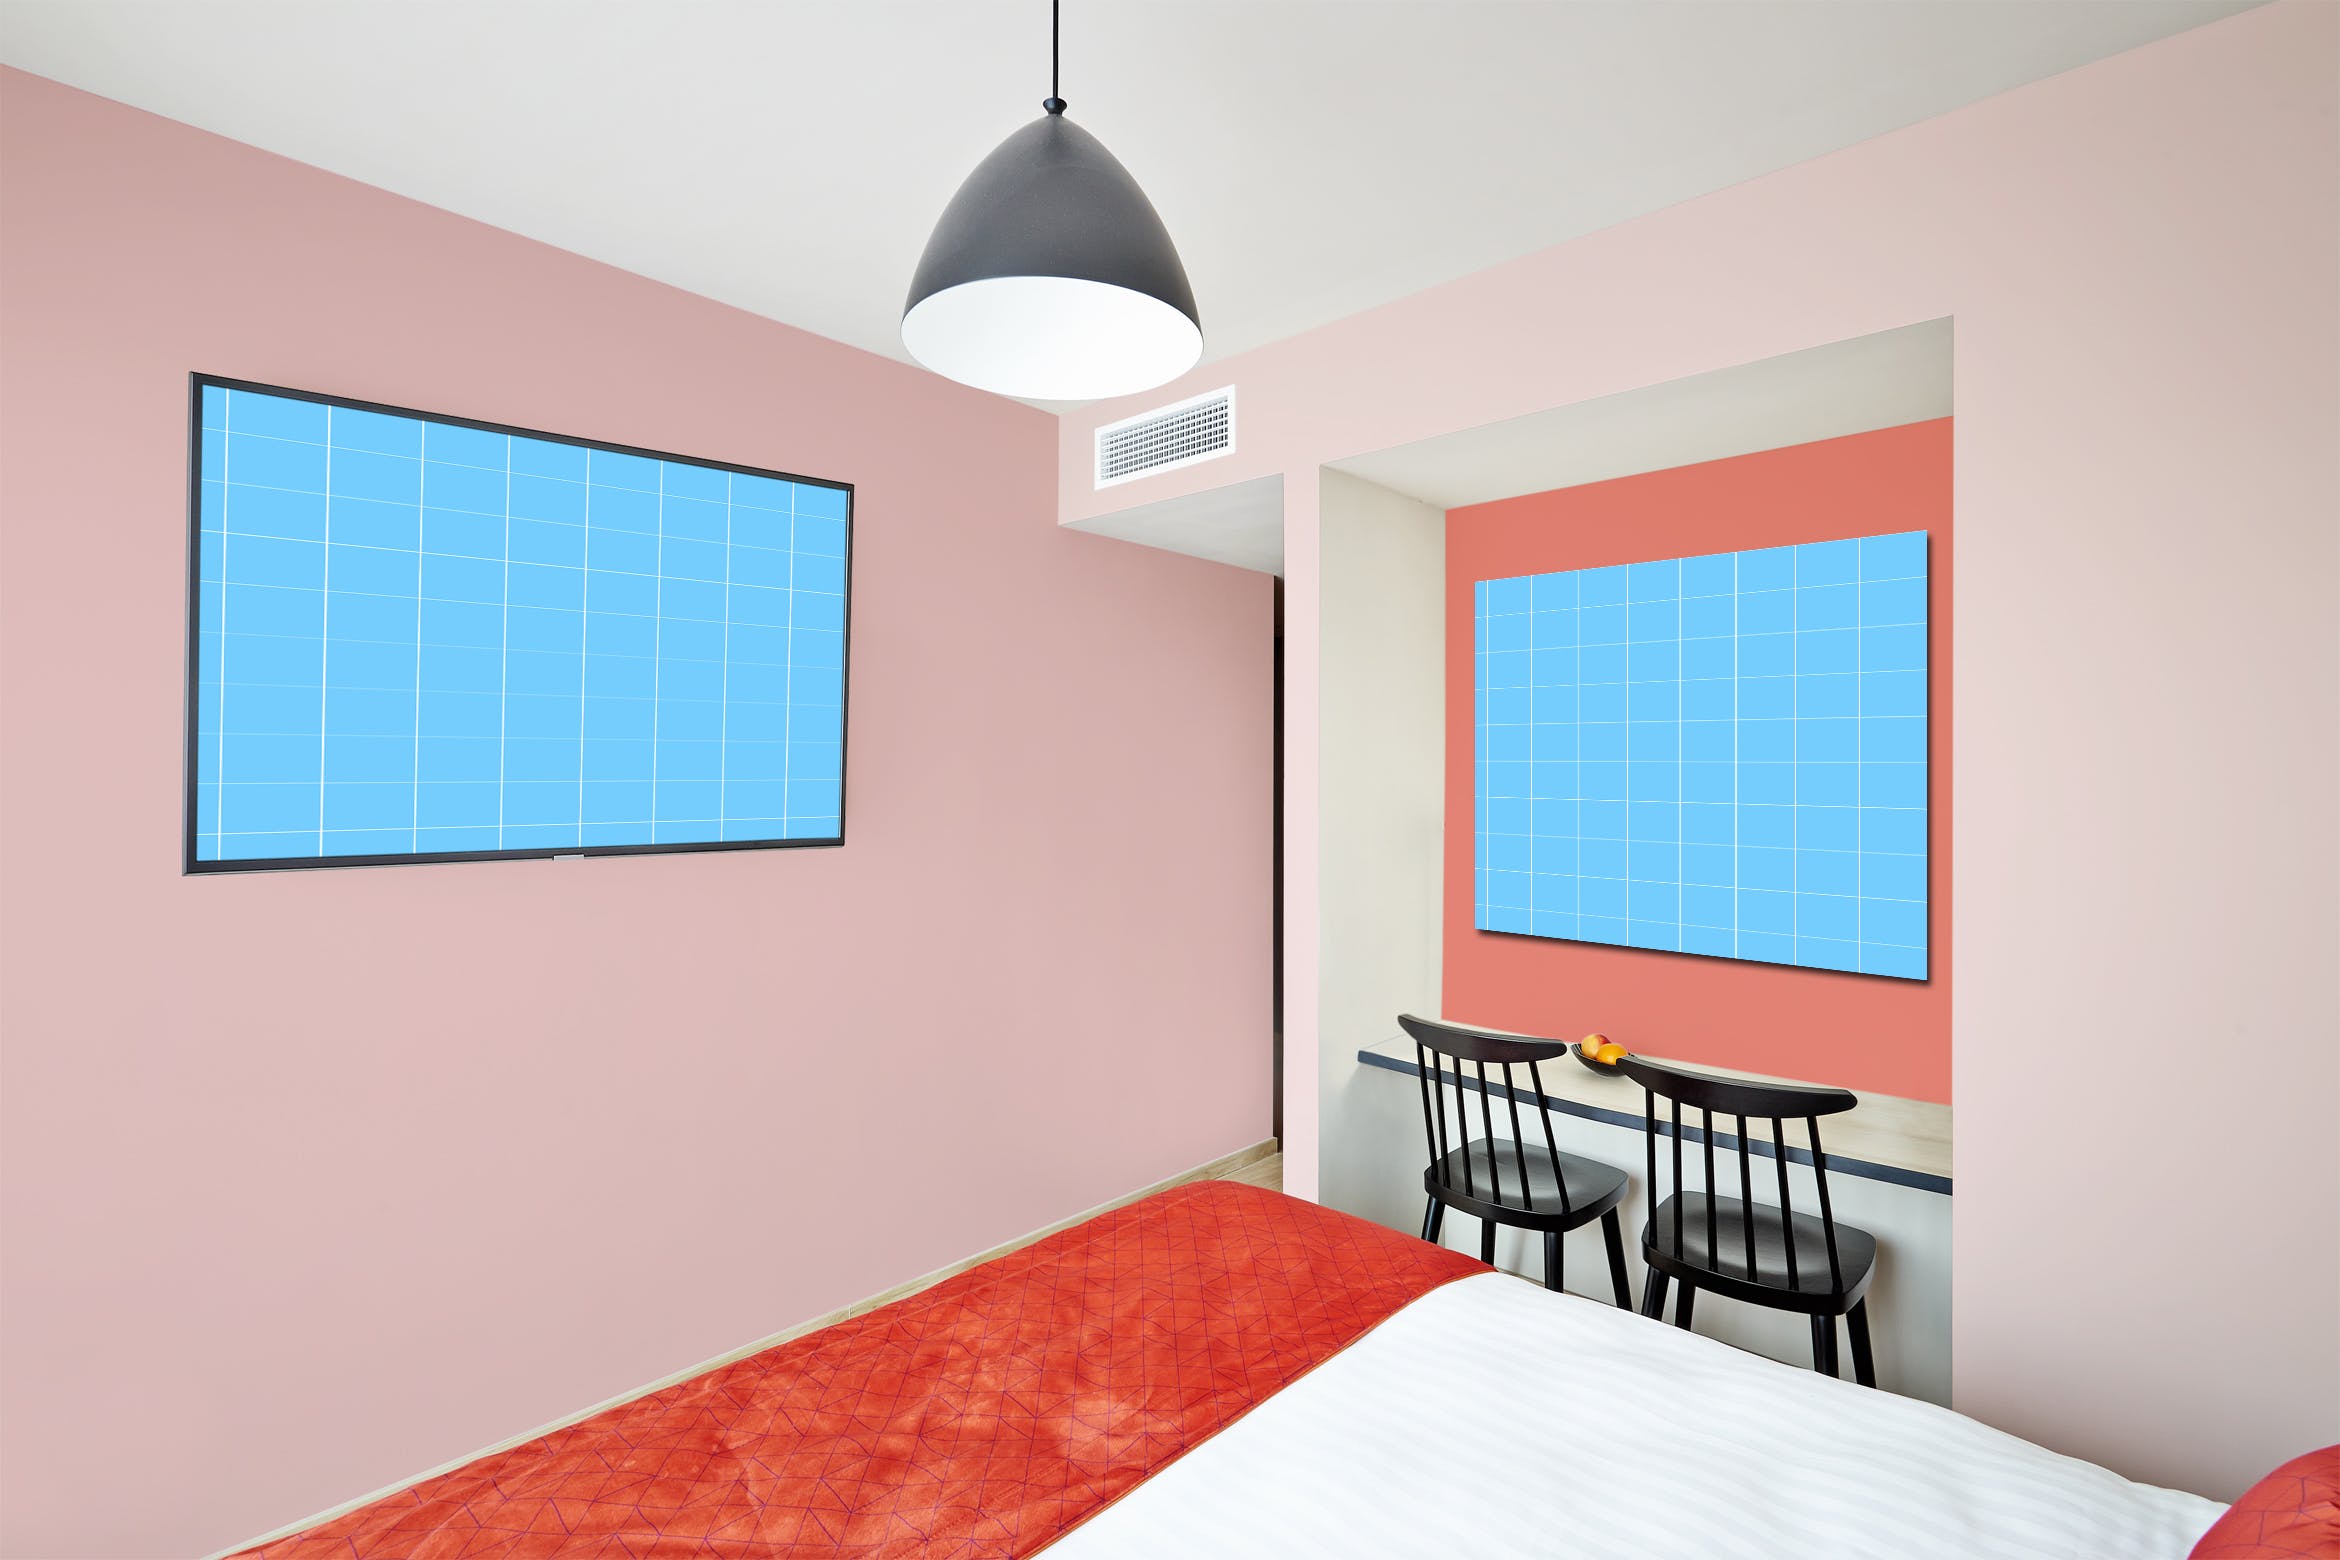 酒店房间装饰画框样机蚂蚁素材精选模板v01 Hotel-Room-01-Mockup插图